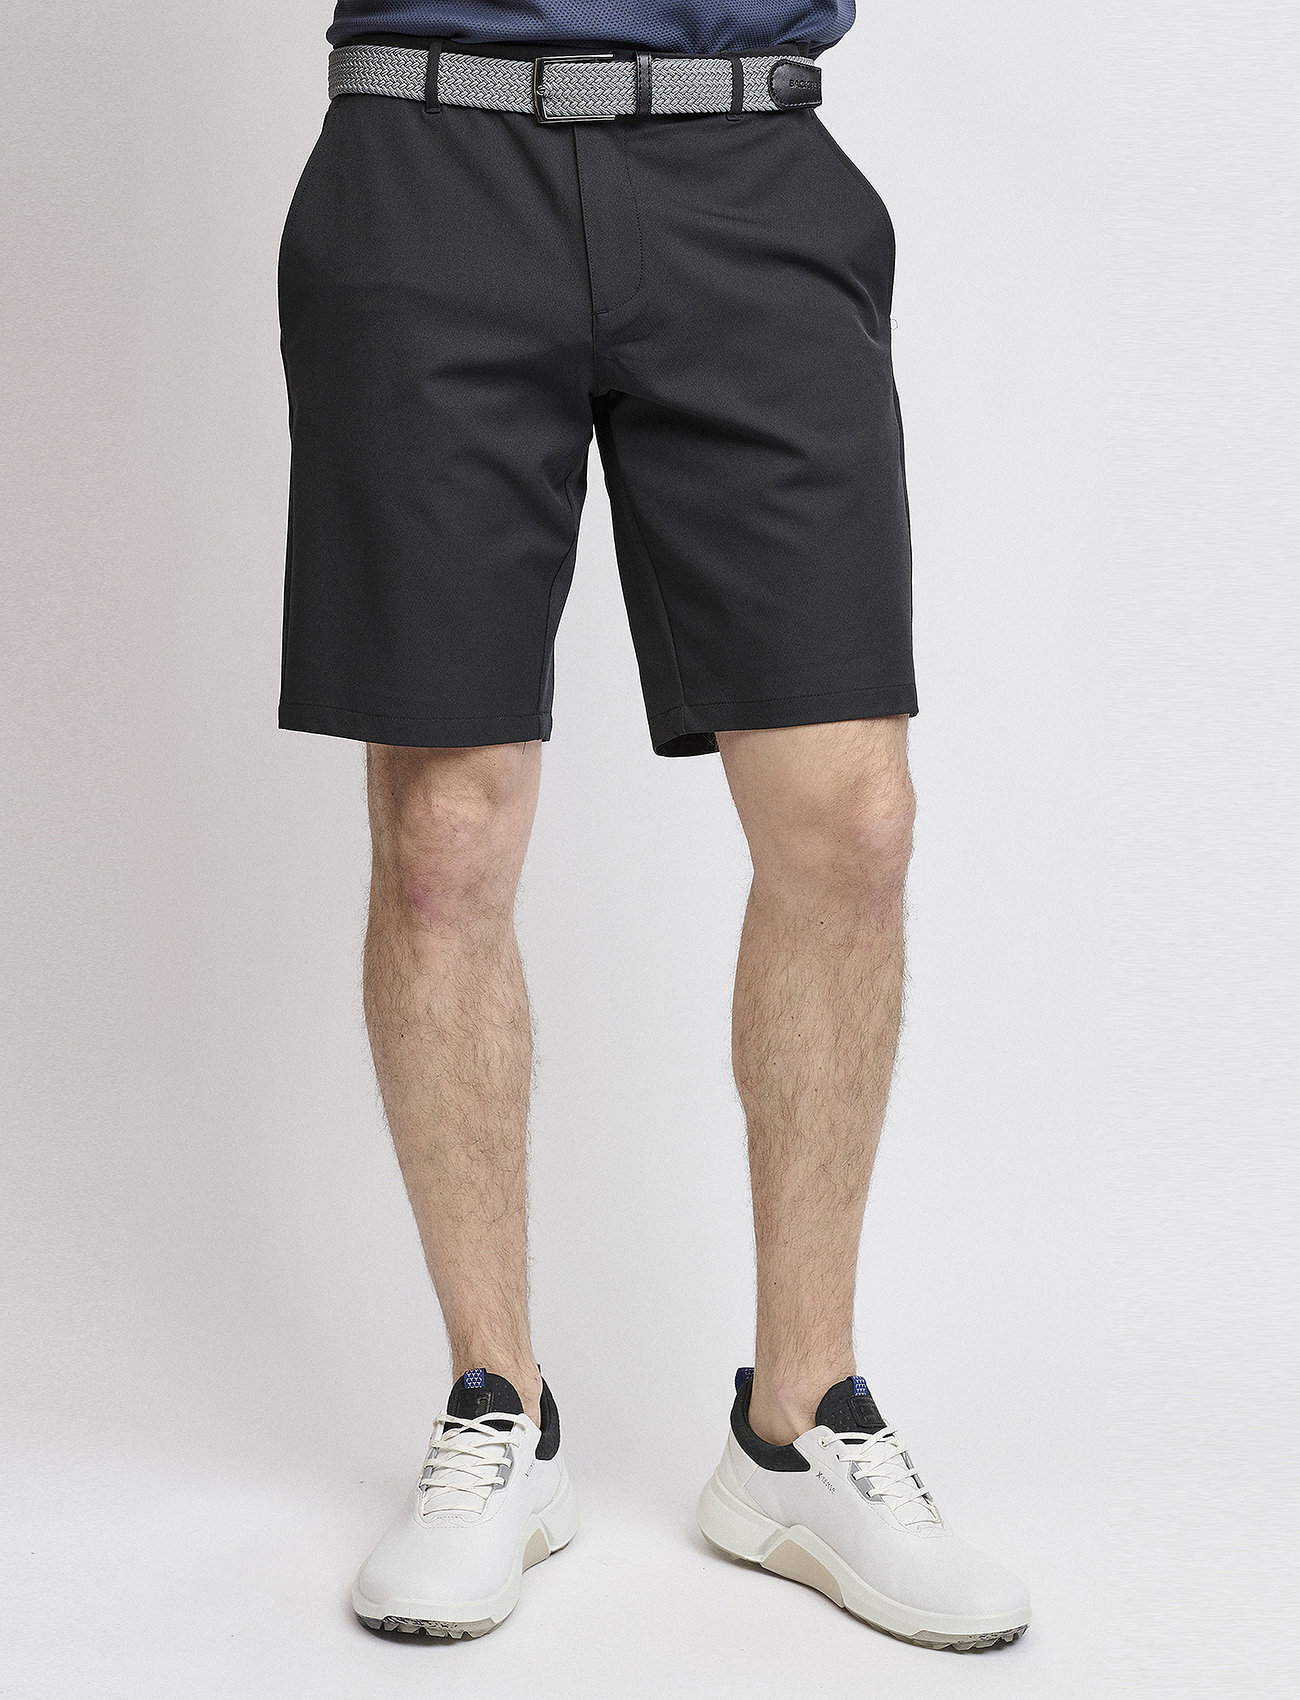 BACKTEE - Mens Lightweight Shorts - golf-shorts - black - 1